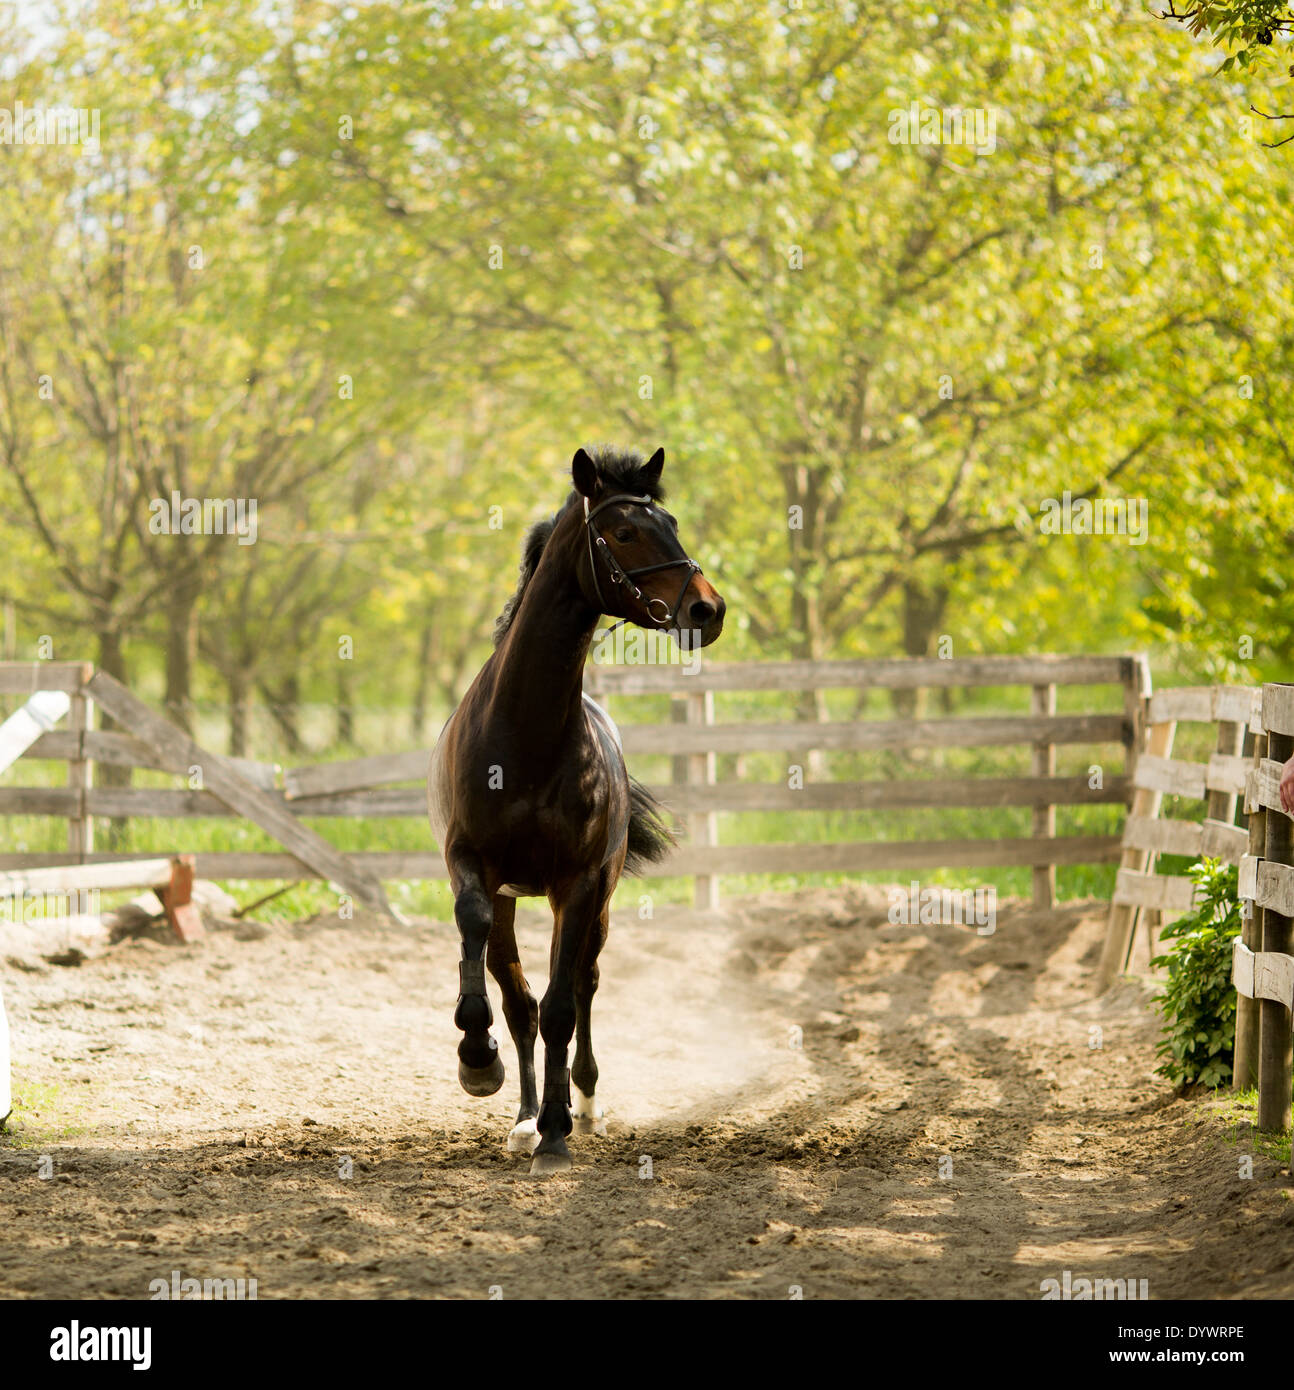 Running horse Stock Photo